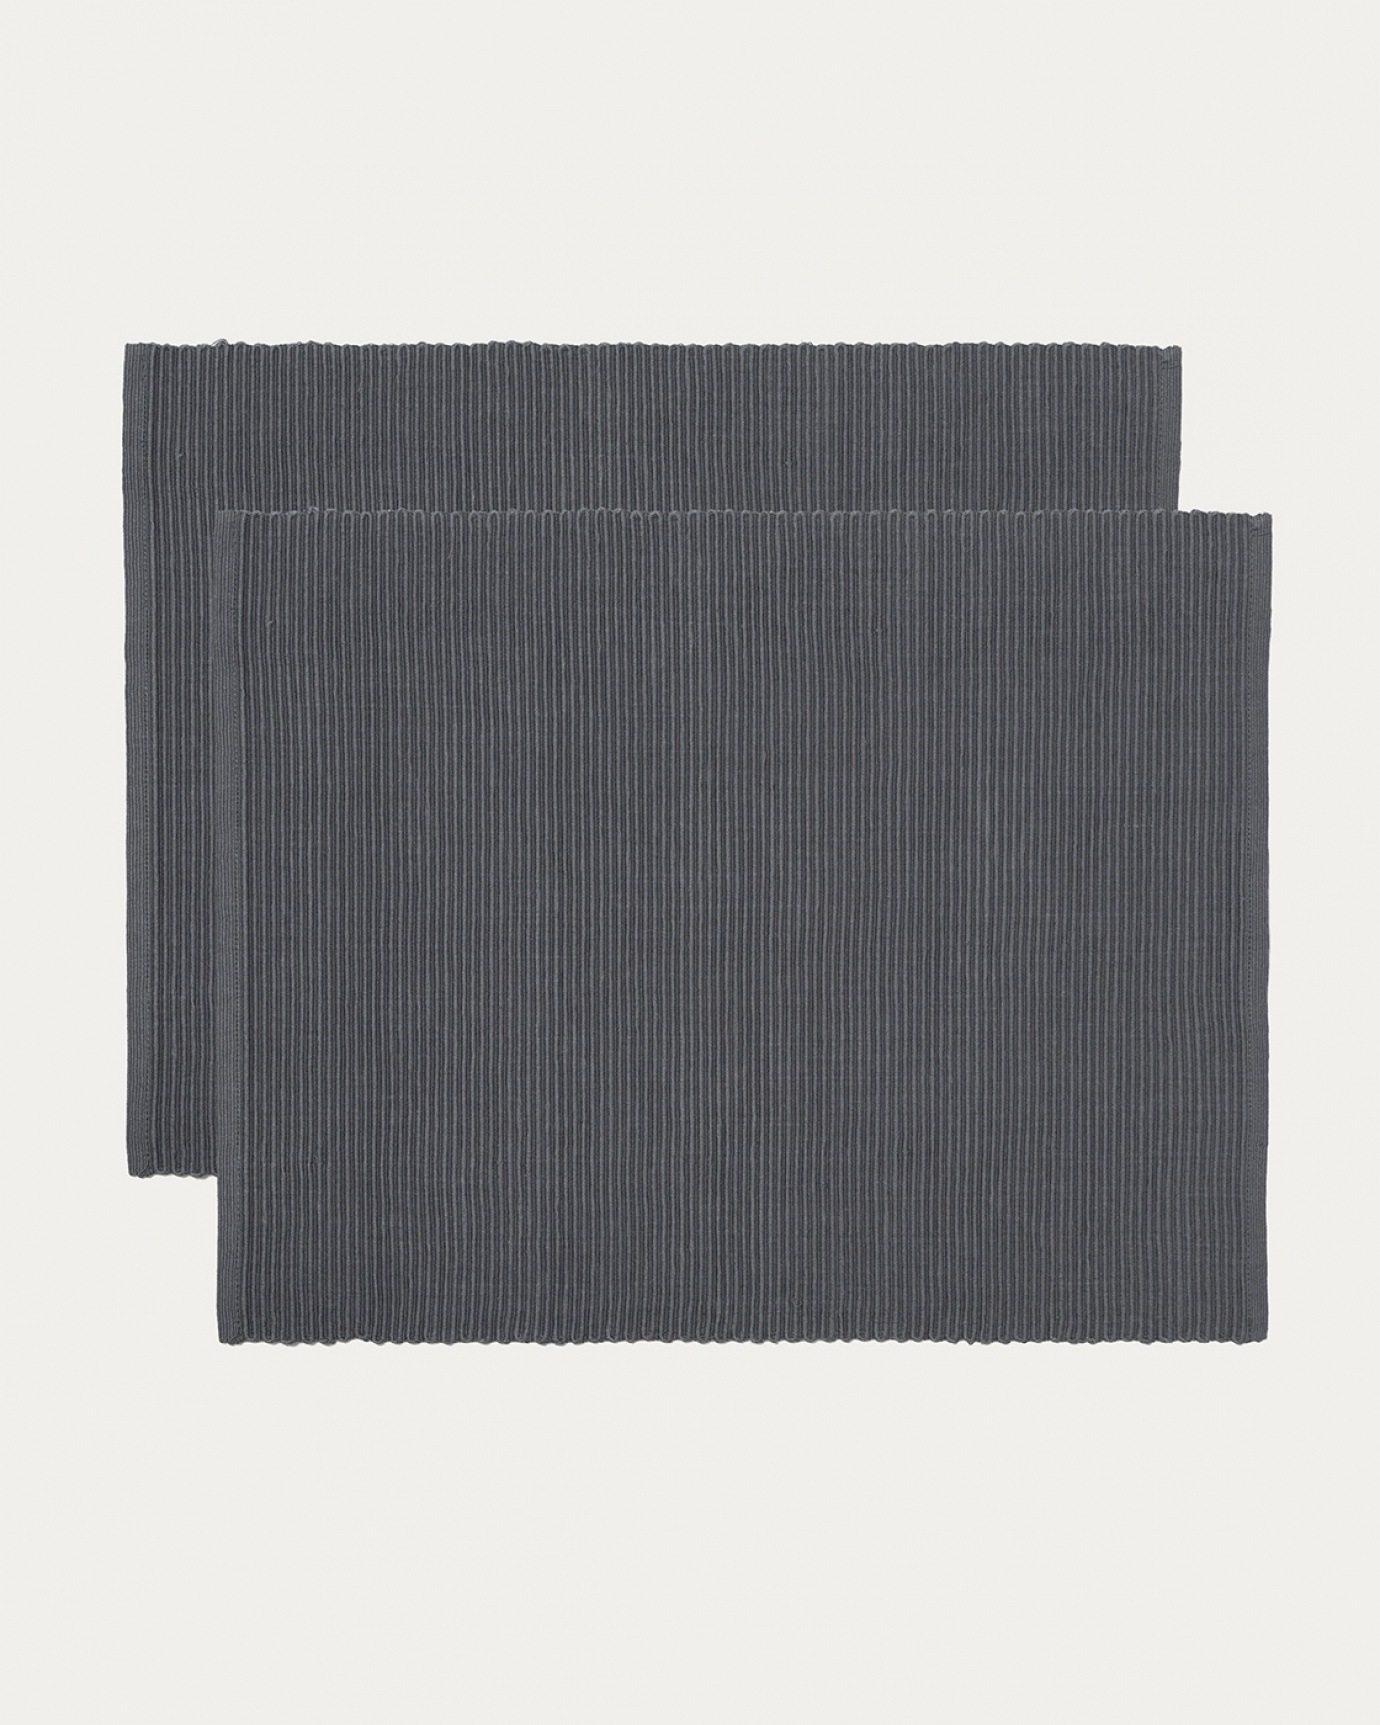 Image du produit set de table UNI gris foncé en coton doux de qualité côtelée de LINUM DESIGN. Taille 35 x 46 cm et vendu en lot de 2.